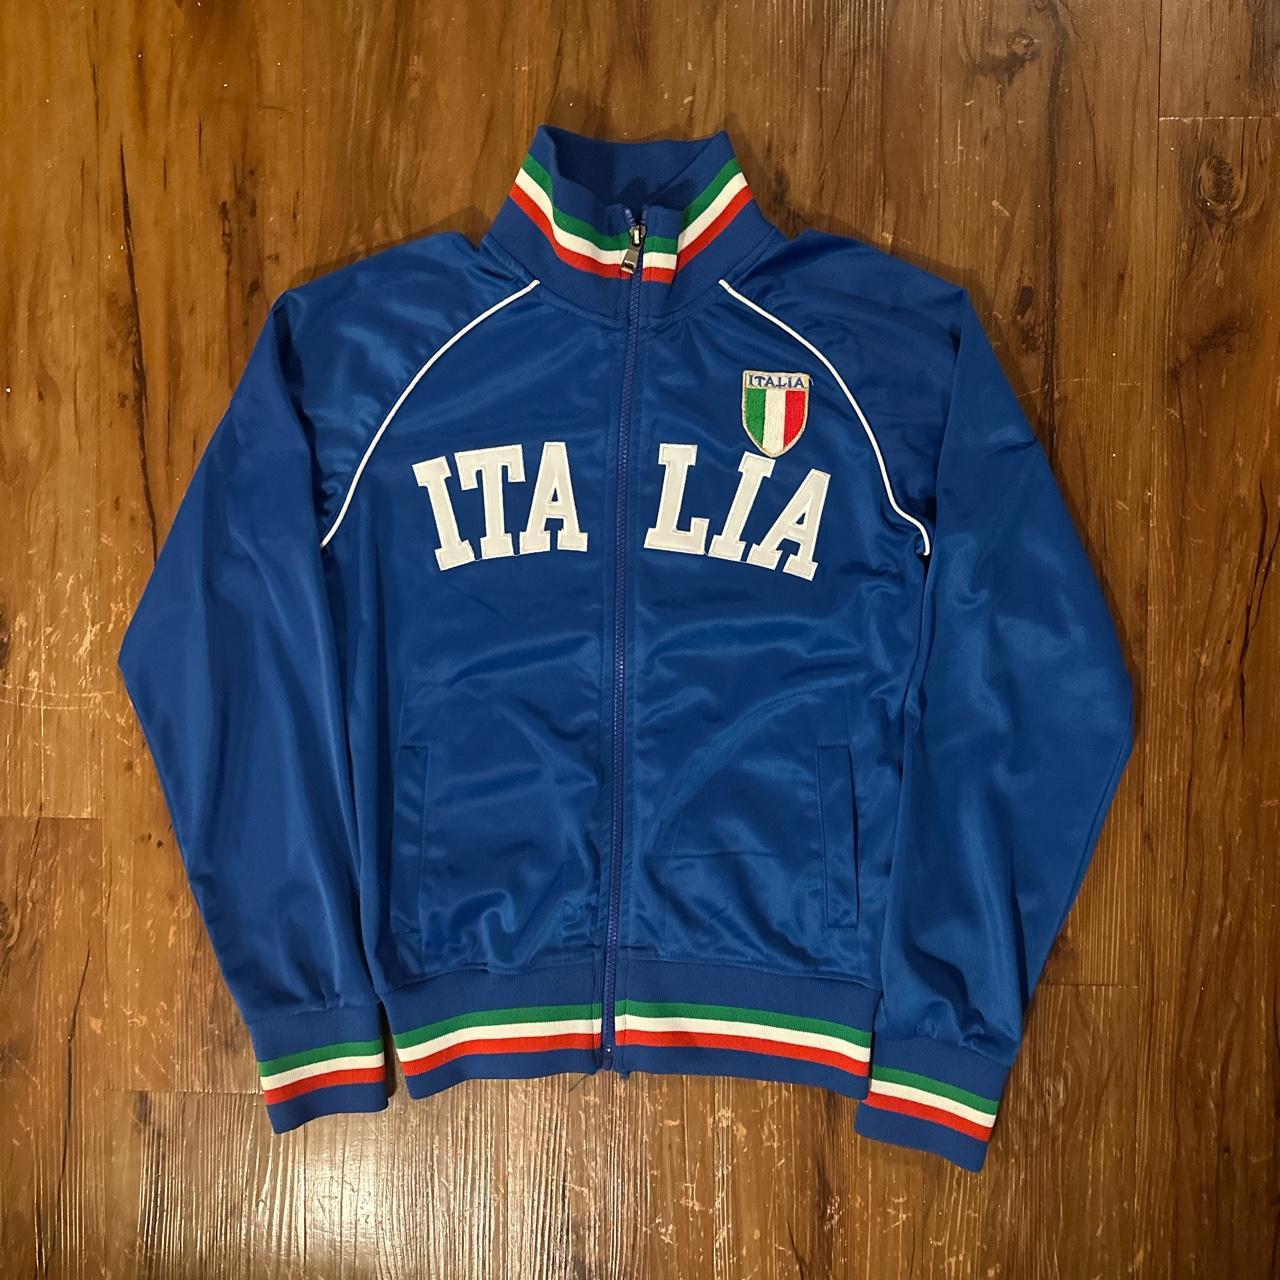 90's old vintage track jacket y2k tech